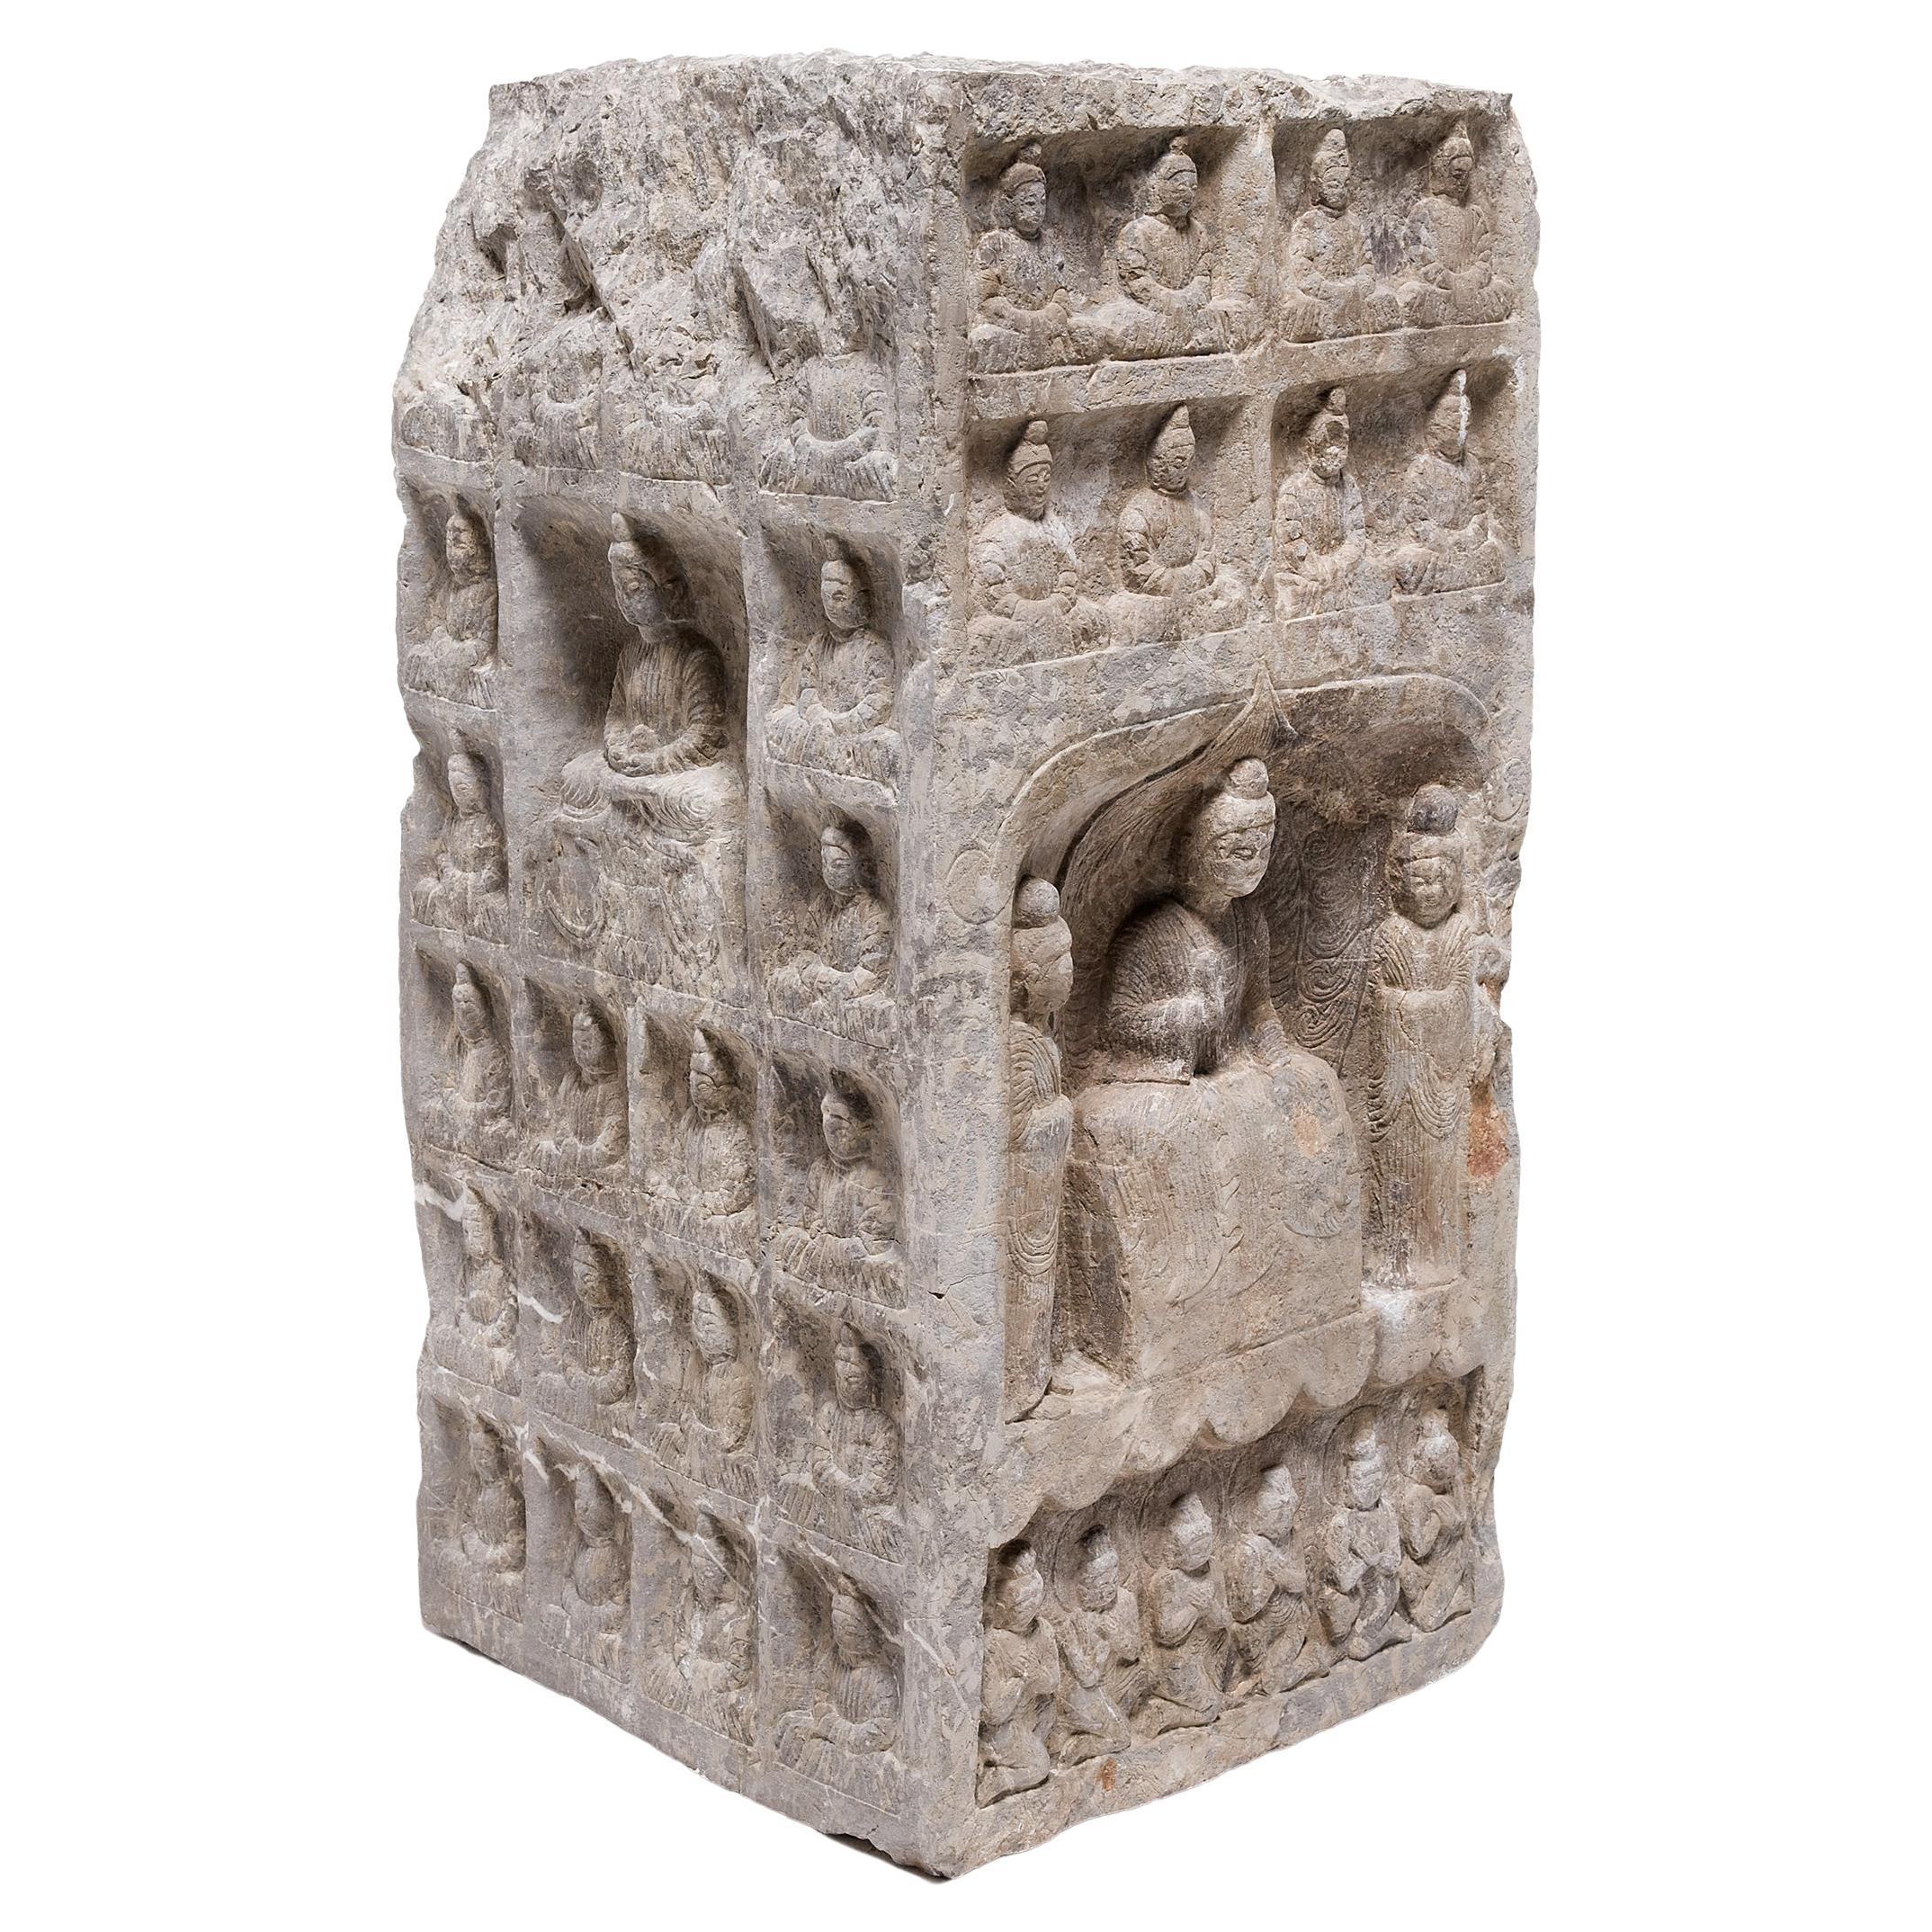 Chinese Buddhist Stone Column, c. 1850